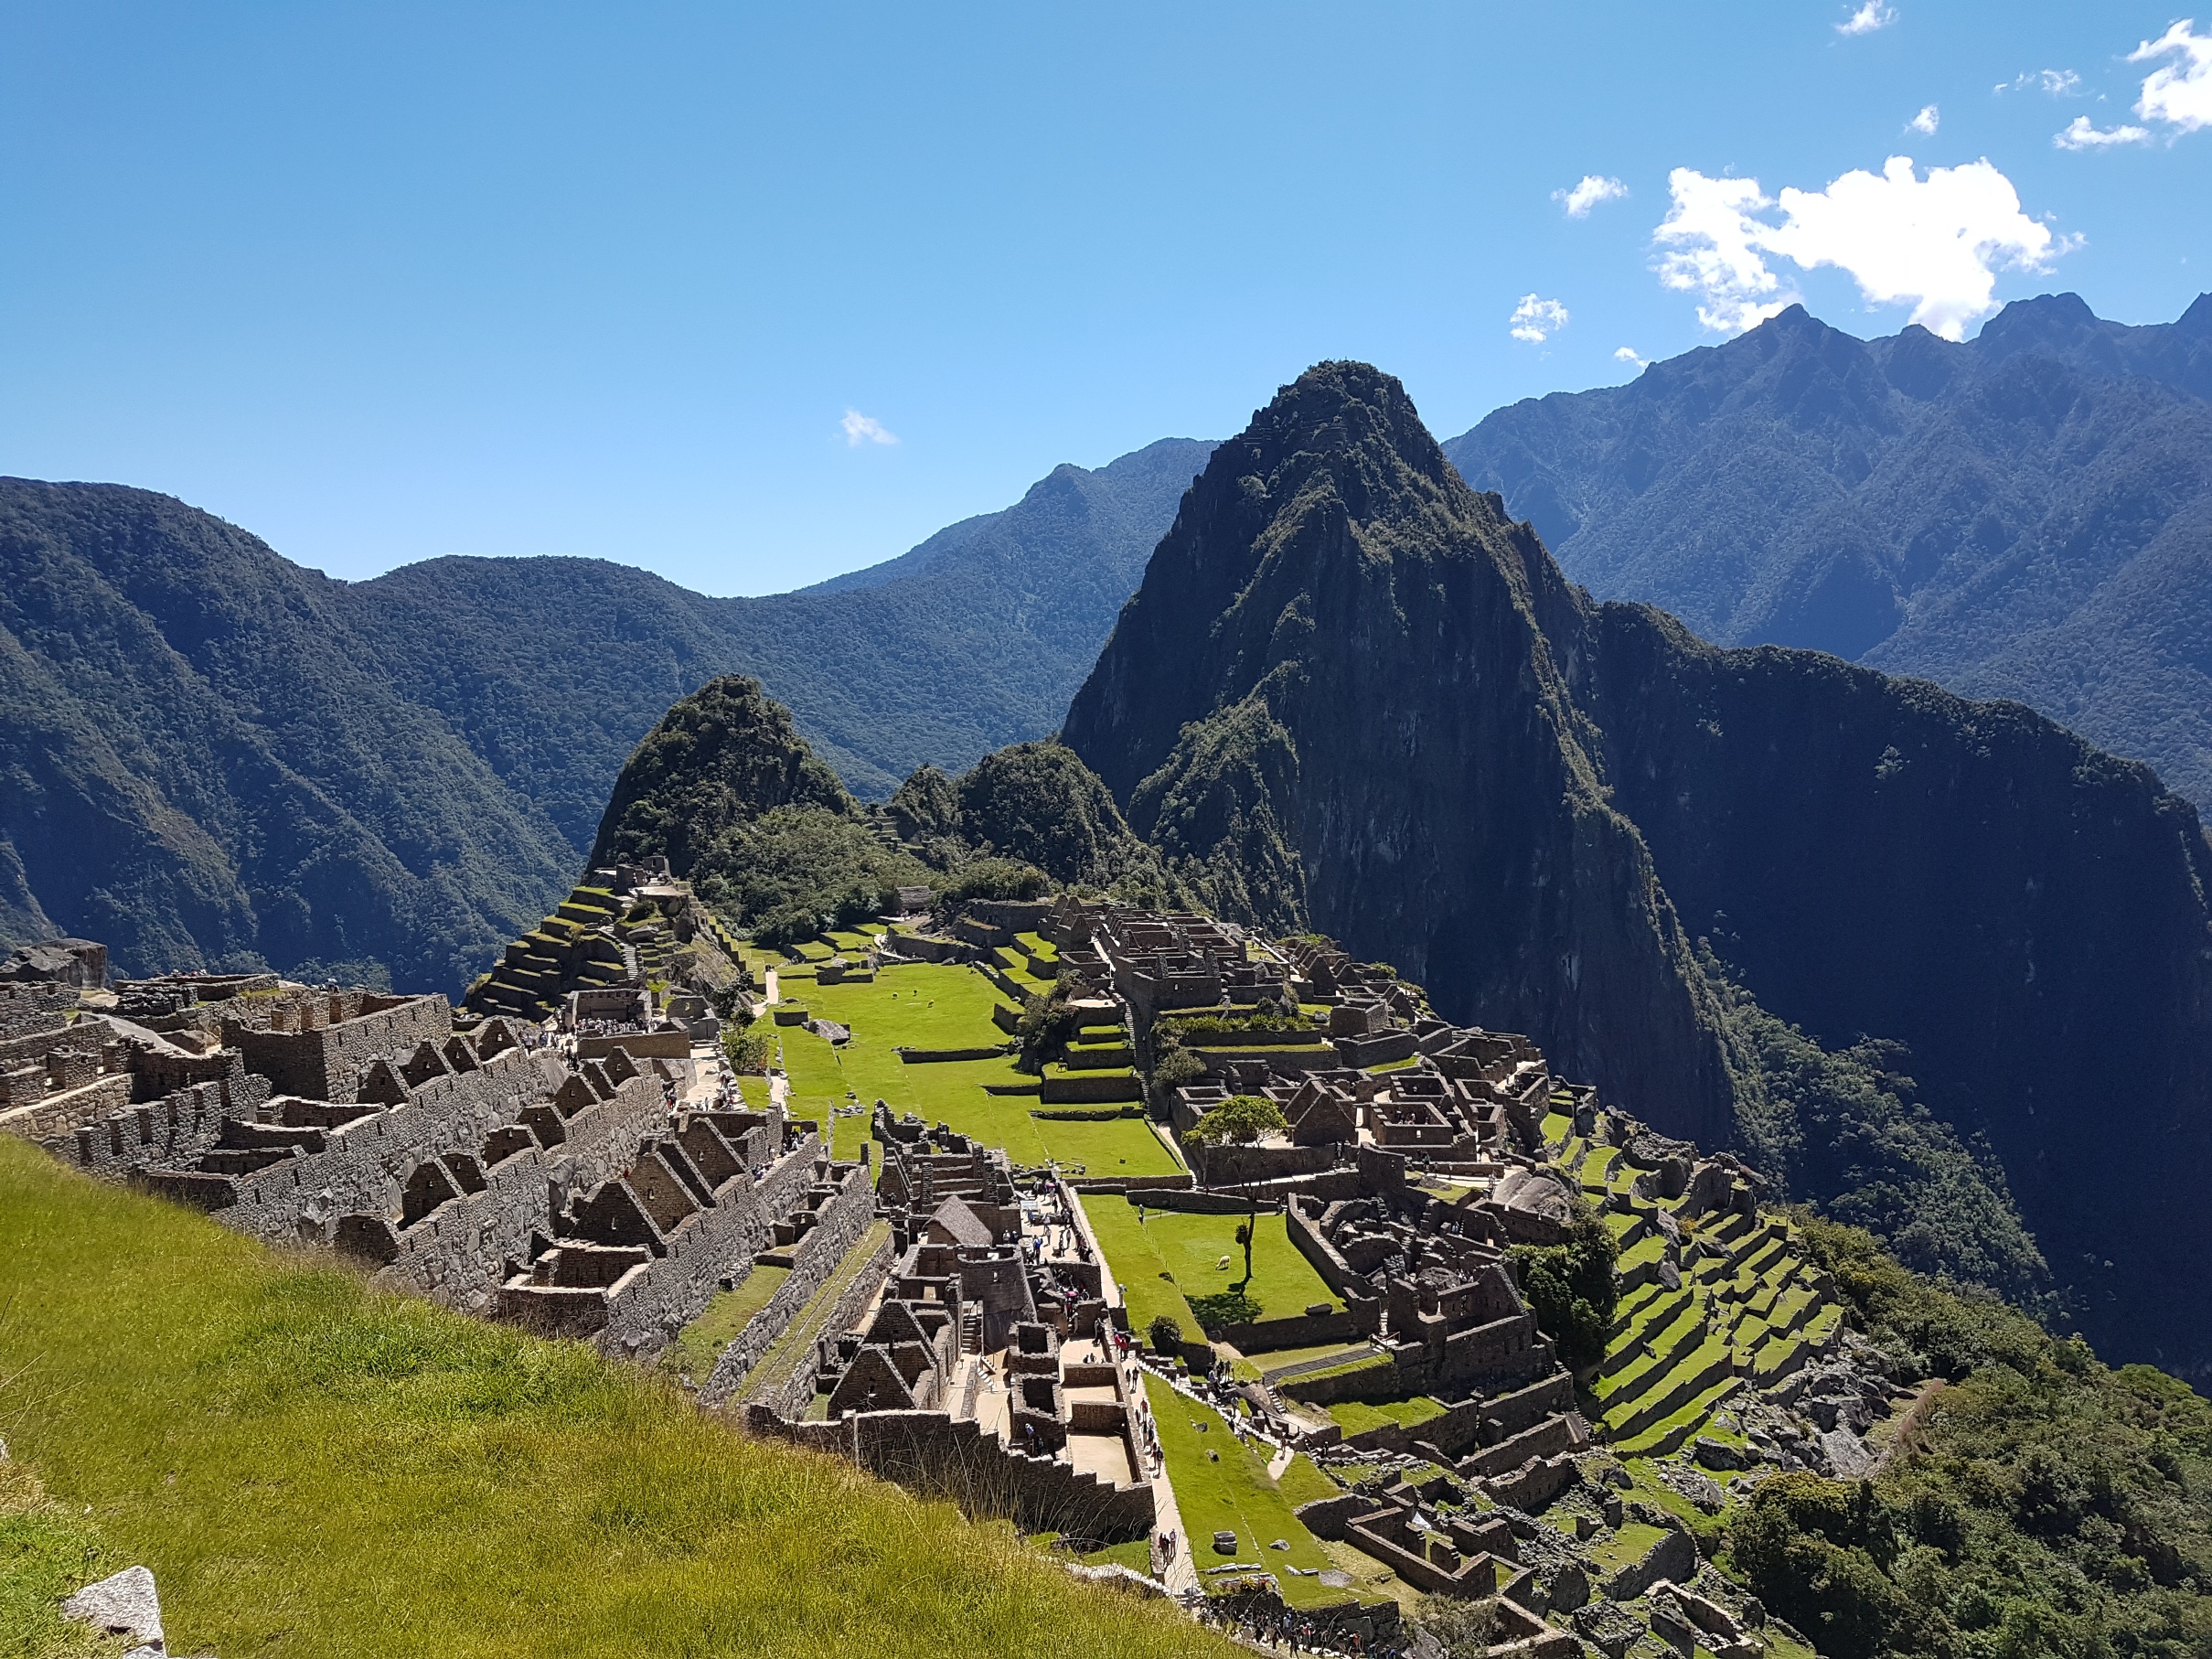 Mint a képeslapokon. És a valóságban is ilyen. A romok és teraszok mögött látható a Huayna Picchu nevű hegycsúcs, ami egy fekvő indián arcát ábrázolja.